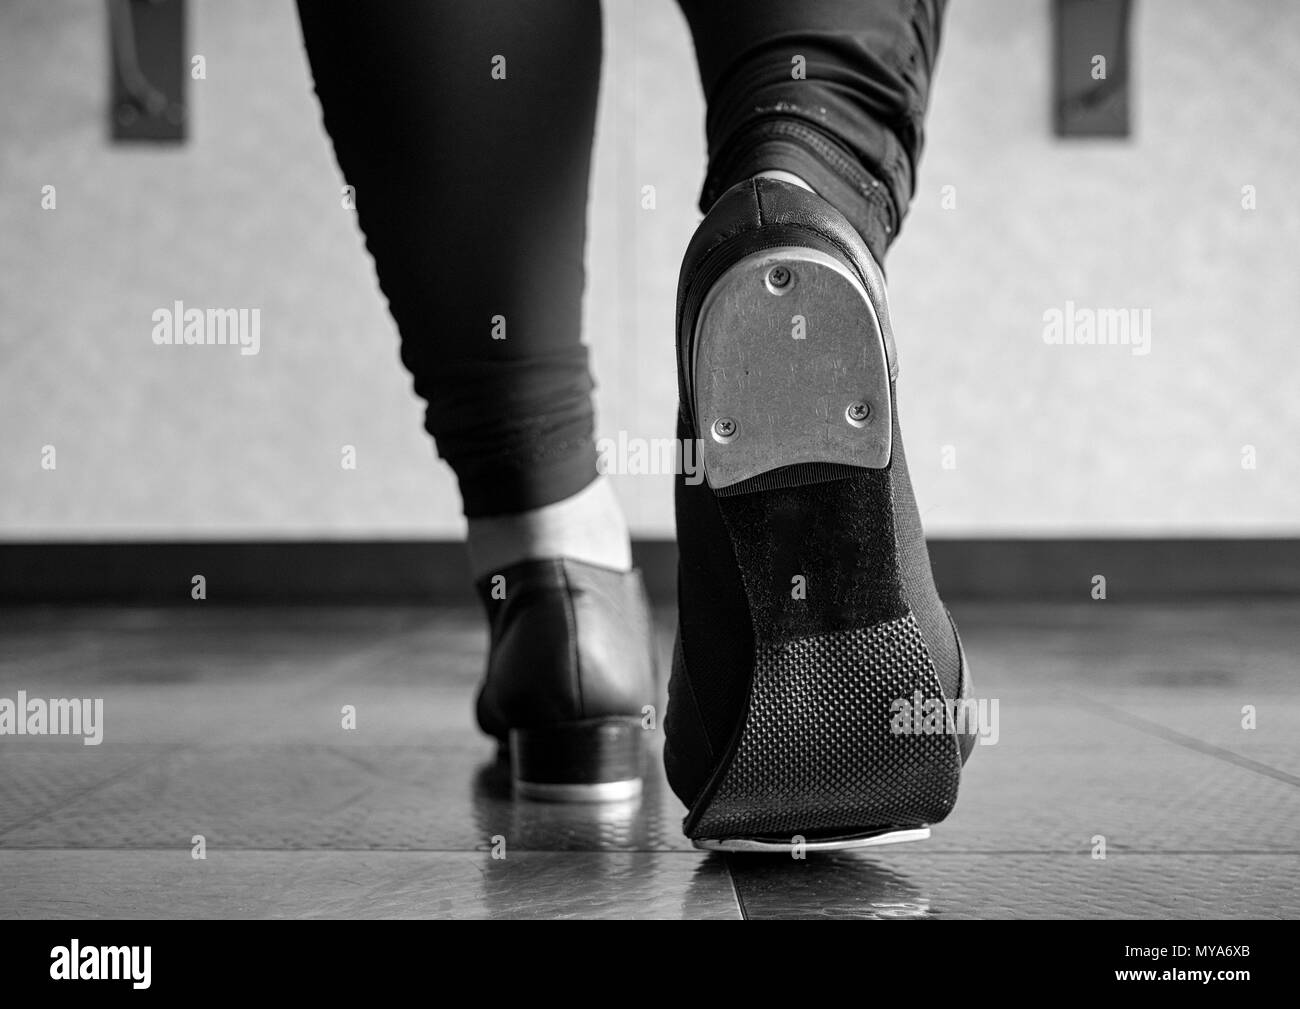 Version noir et blanc de la marche dans des chaussures en classe tap tap Banque D'Images